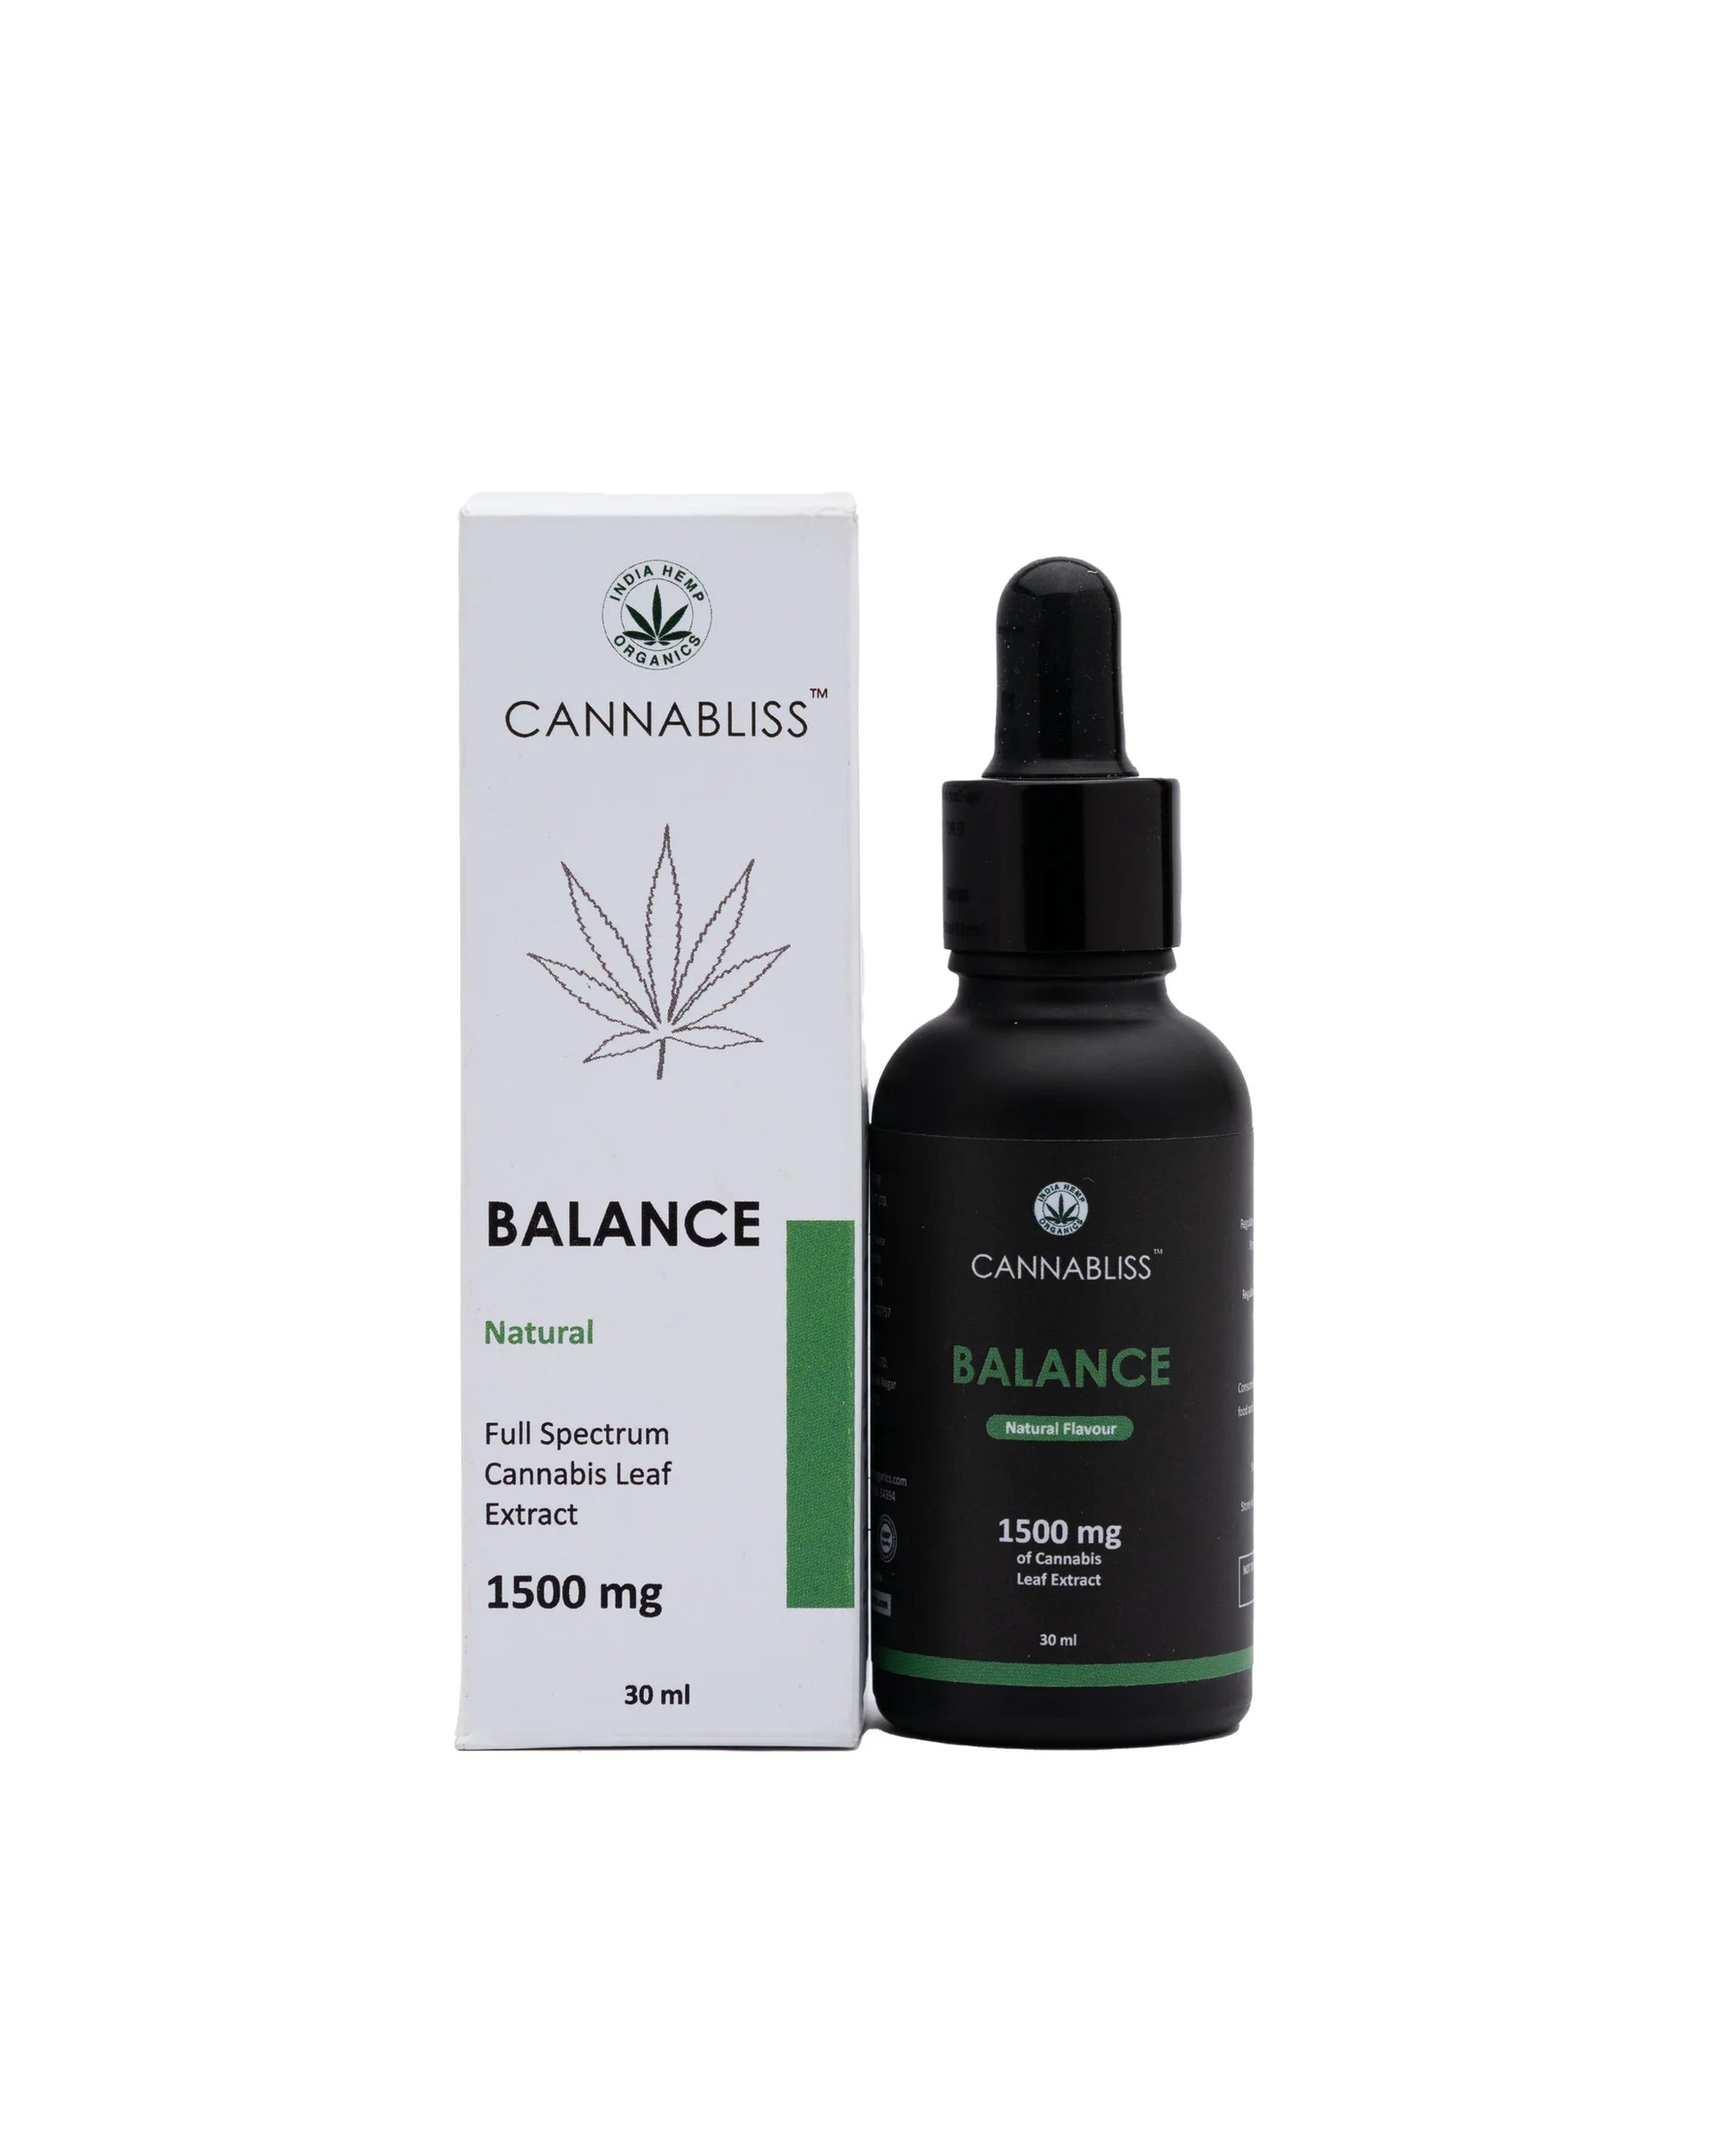 Cannabliss BALANCE with 5% Cannabis Leaf